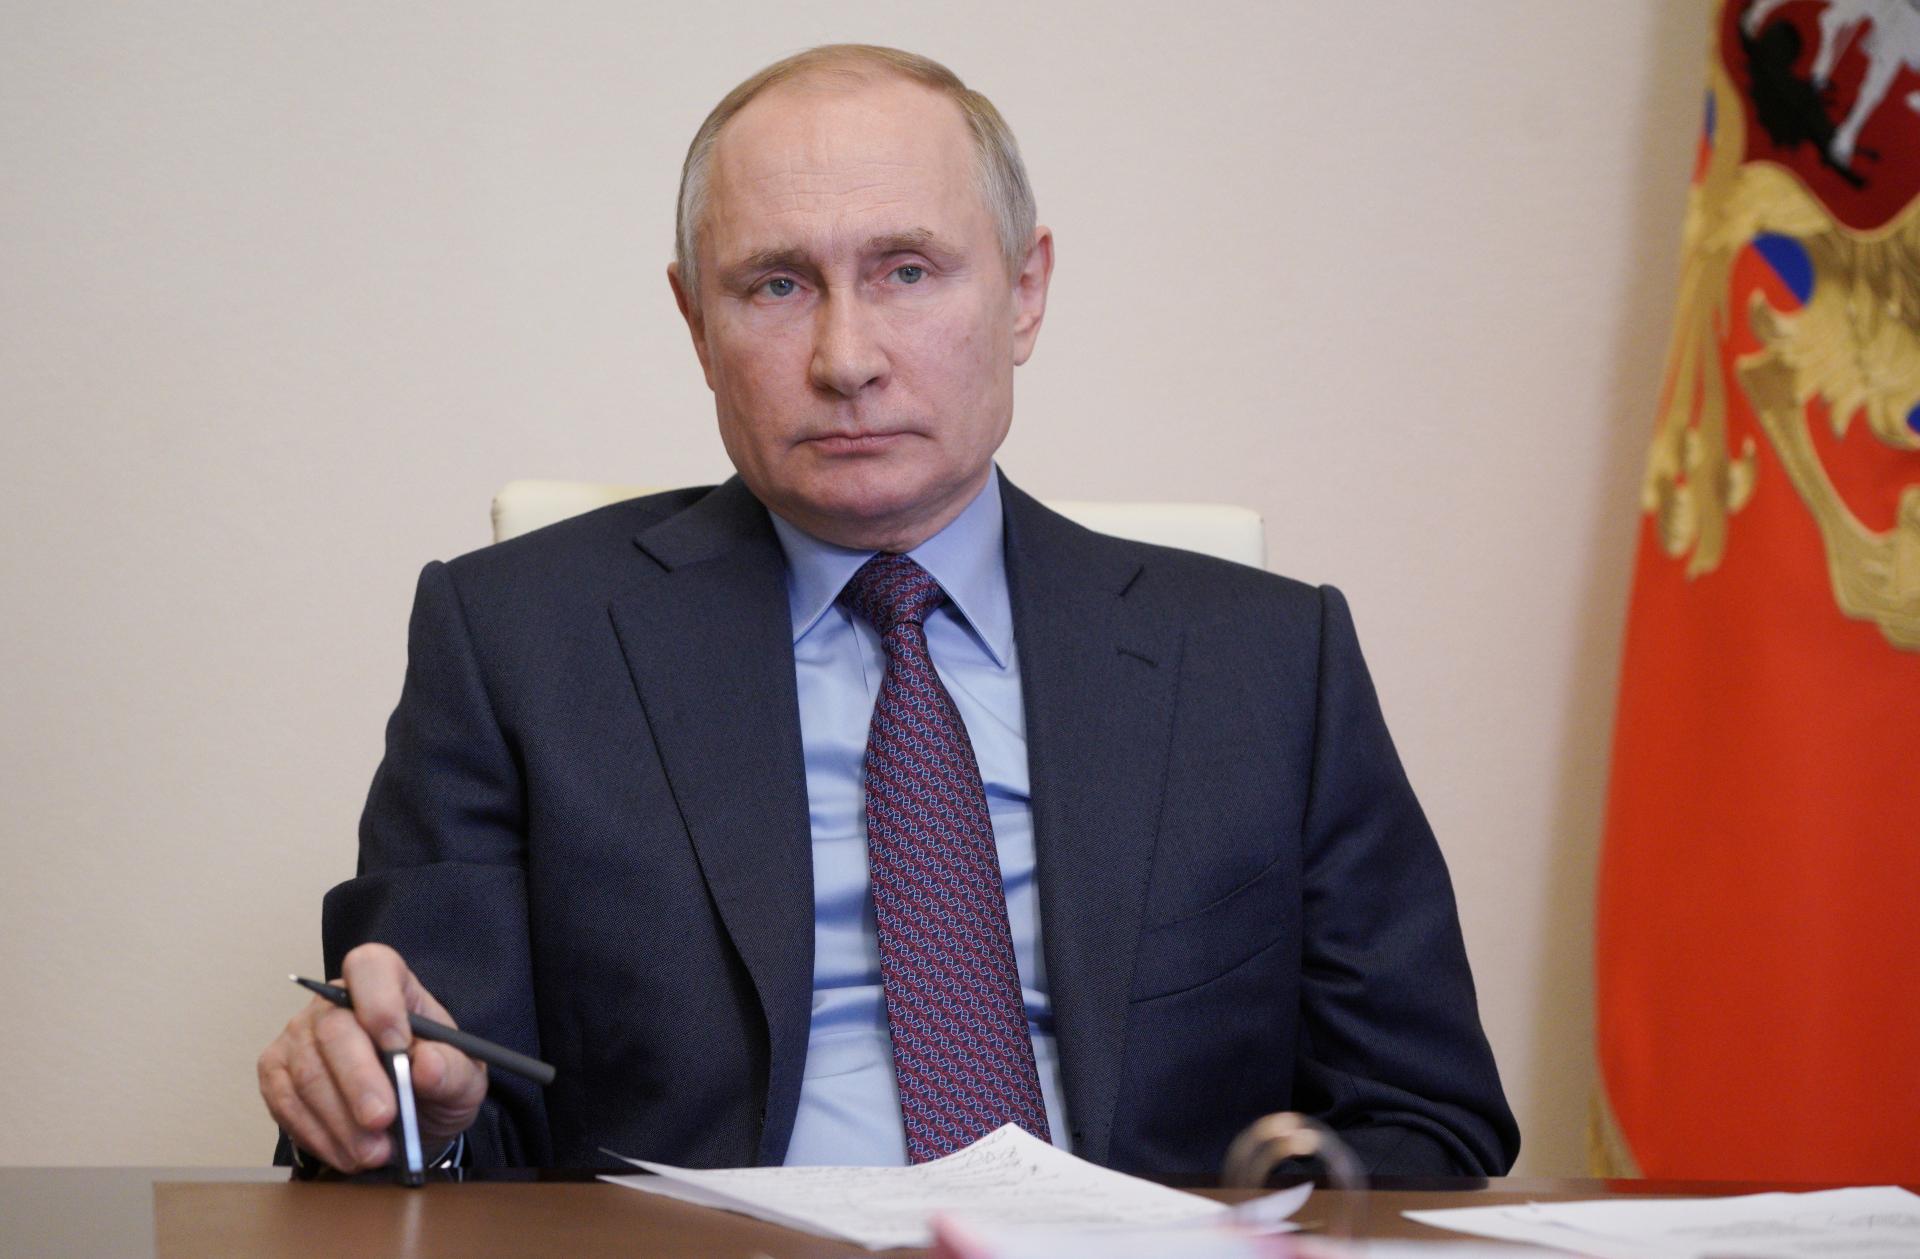 La participación de Putin en la cumbre climática tardará en aclararse